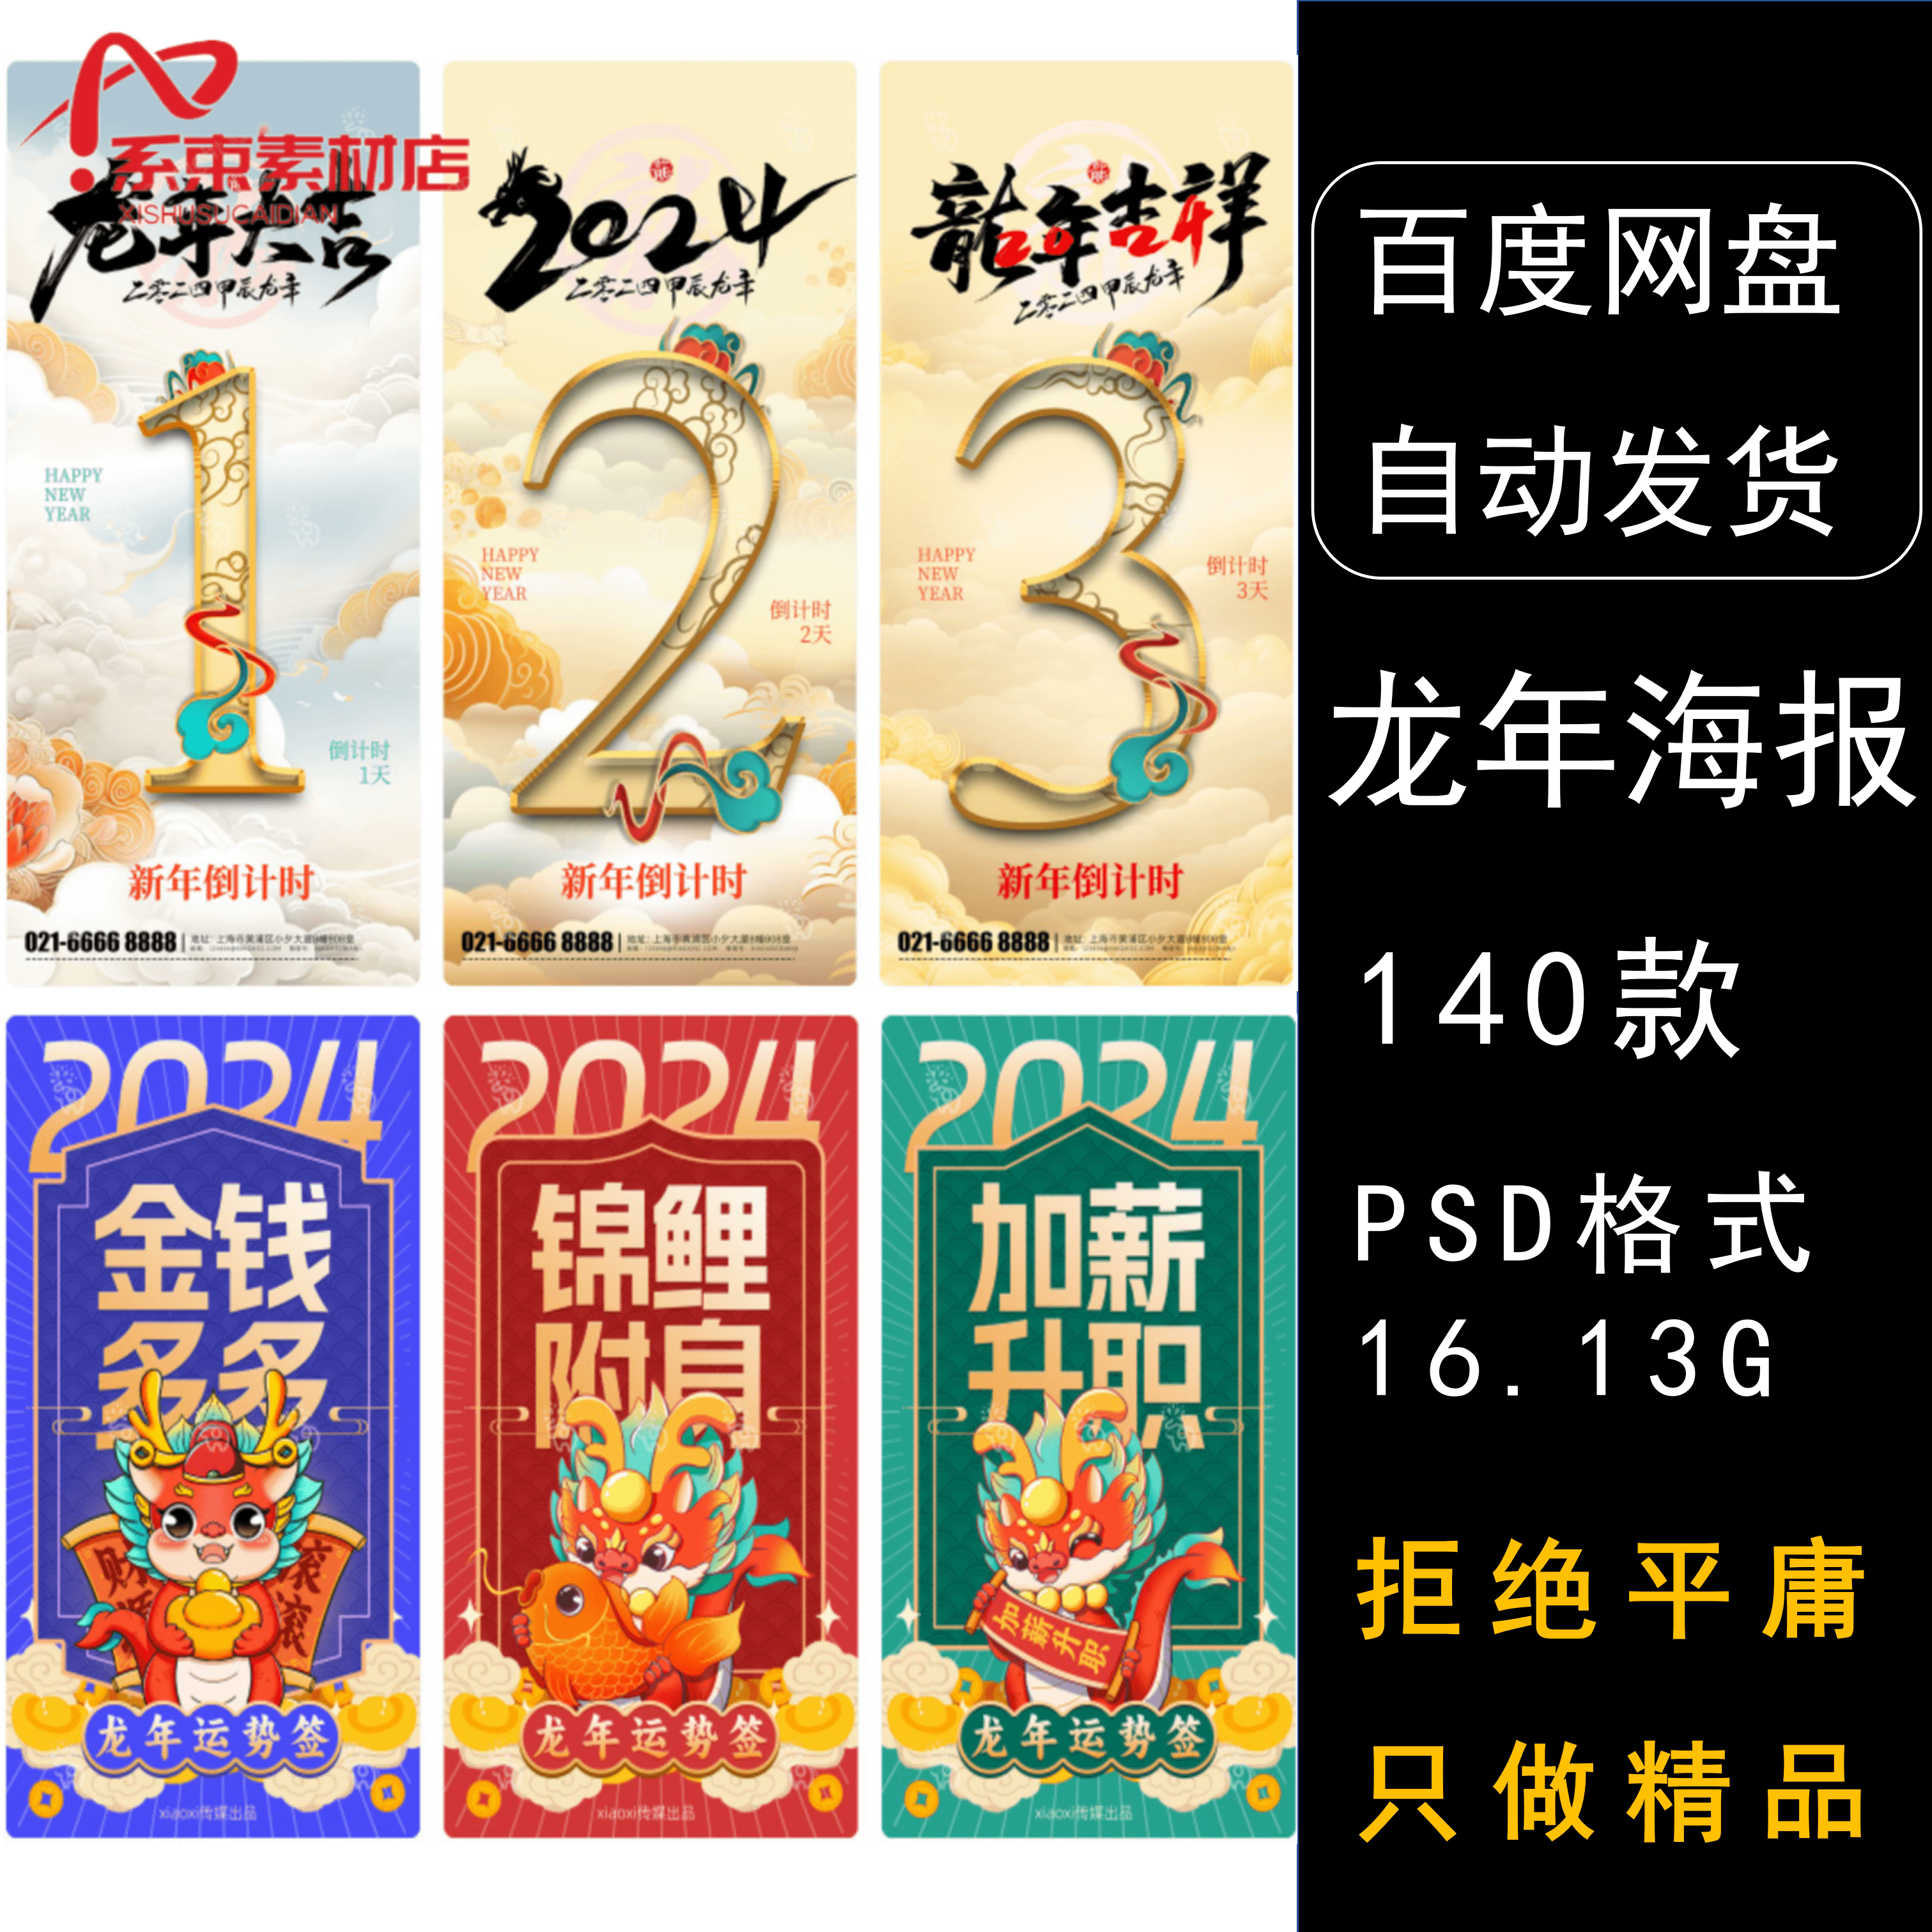 2024龙年新春除夕元旦倒计时年初节日系列海报psd设计素材模板